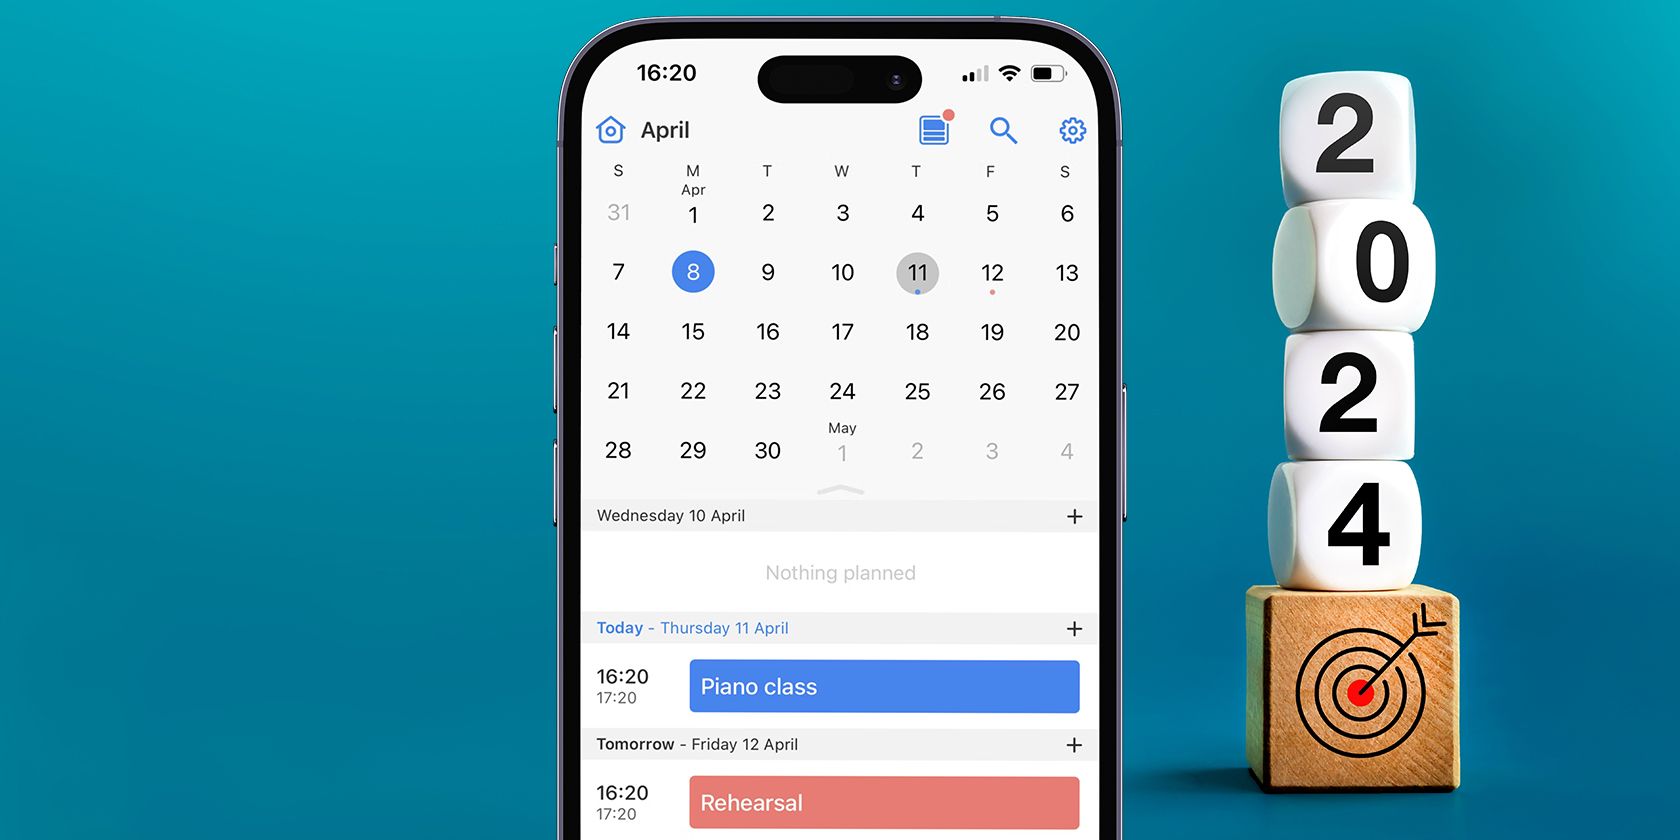 A Calendar app running on an iPhone